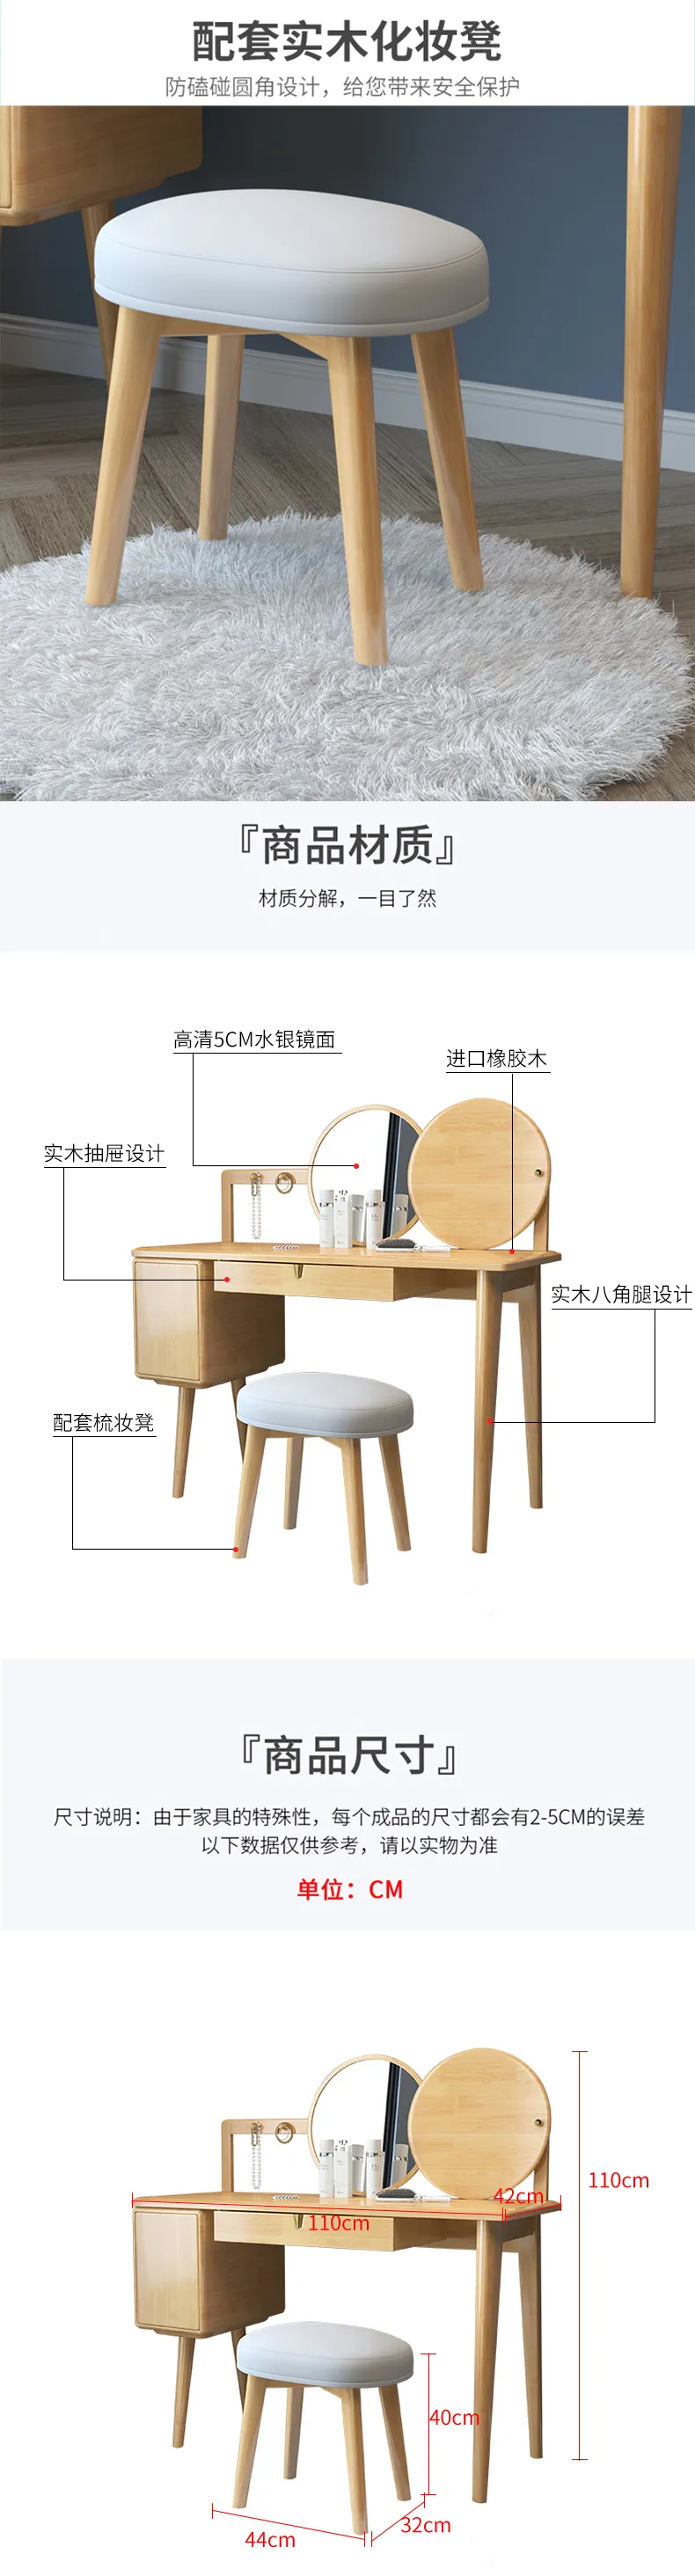 华松居 北欧实木梳妆台凳子简约原木餐凳现代轻奢 JZT-12-C(图6)